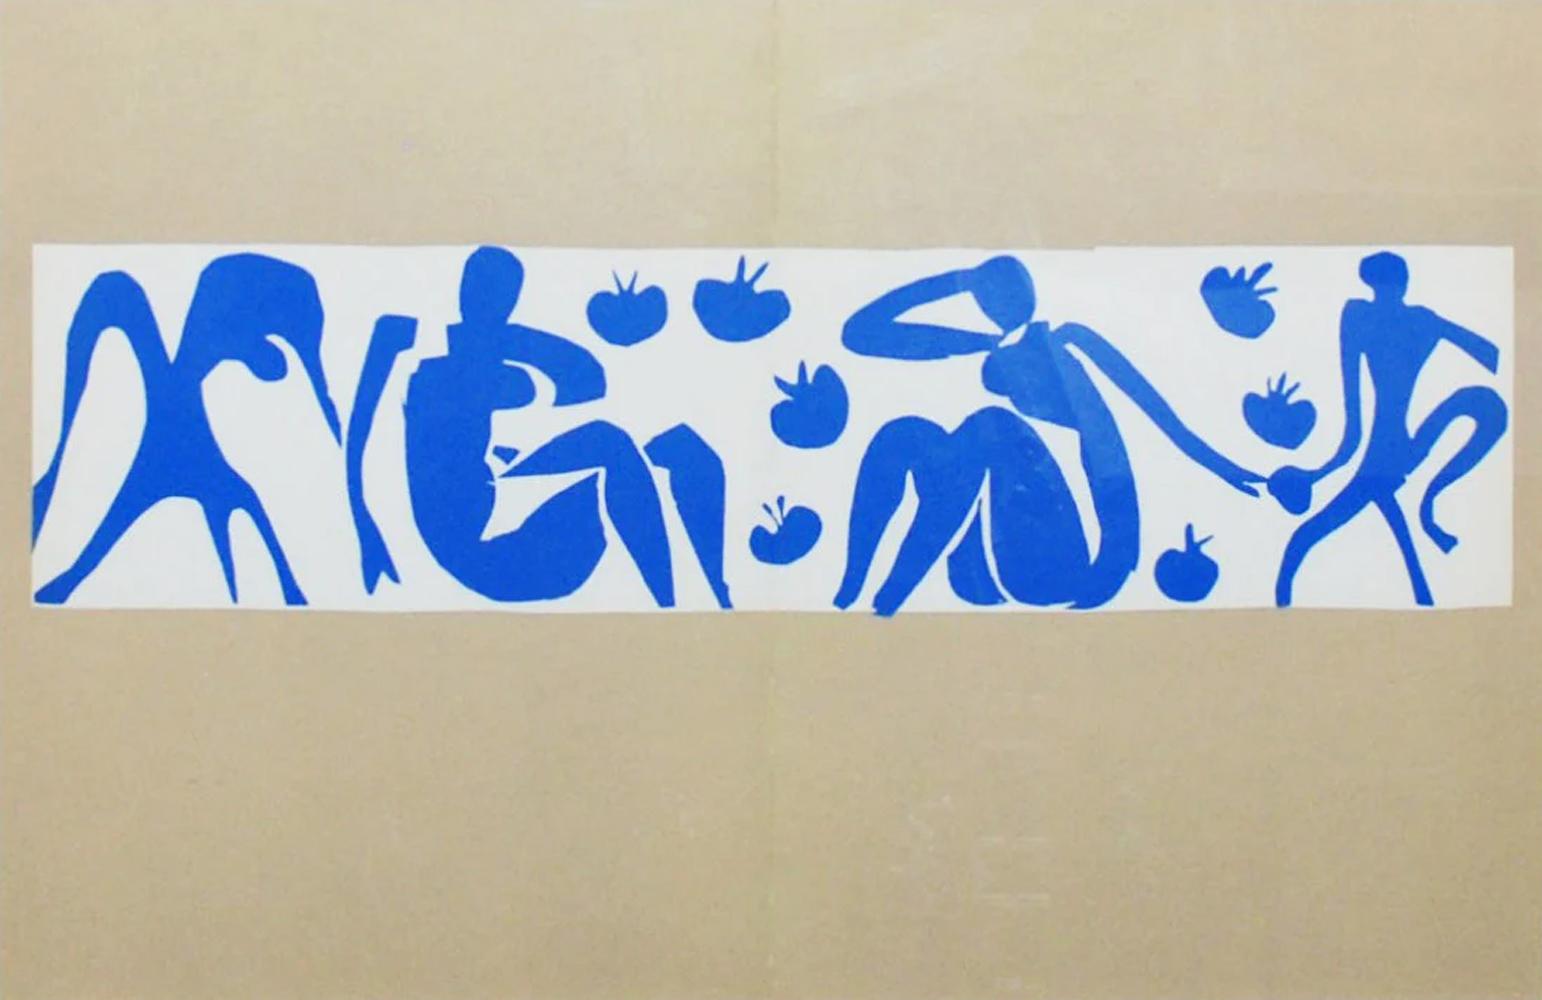 Femmes et Singes - Print by (after) Henri Matisse